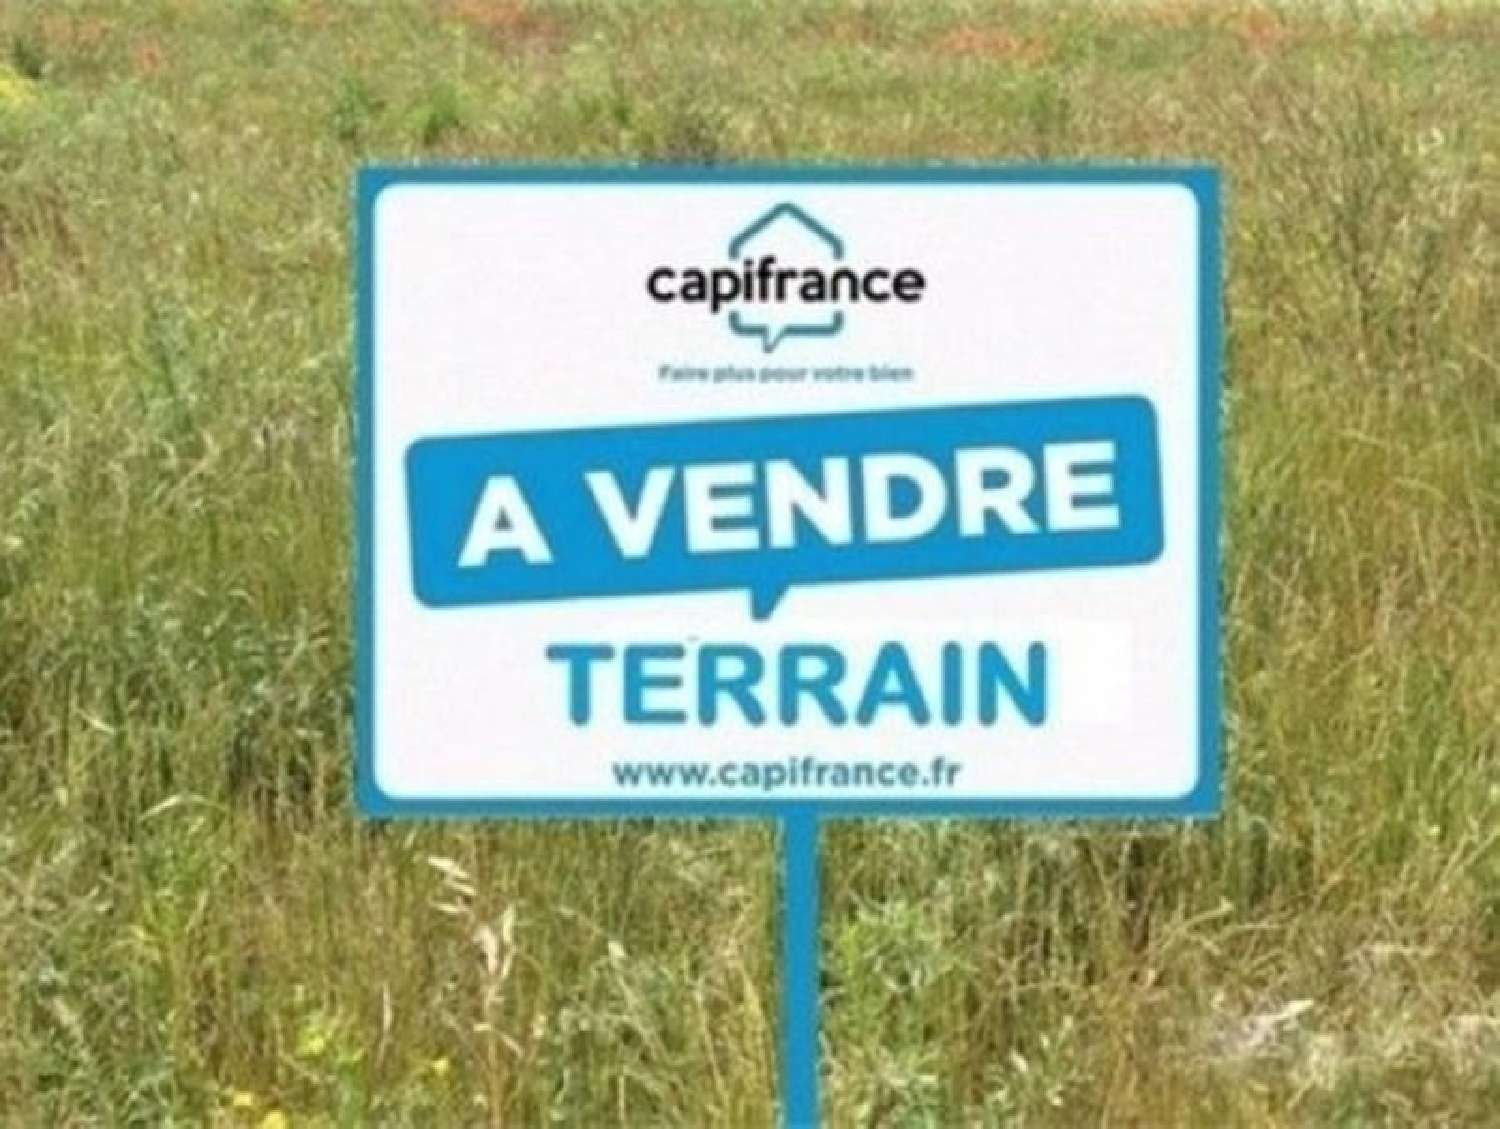  for sale terrain Verchin Pas-de-Calais 1